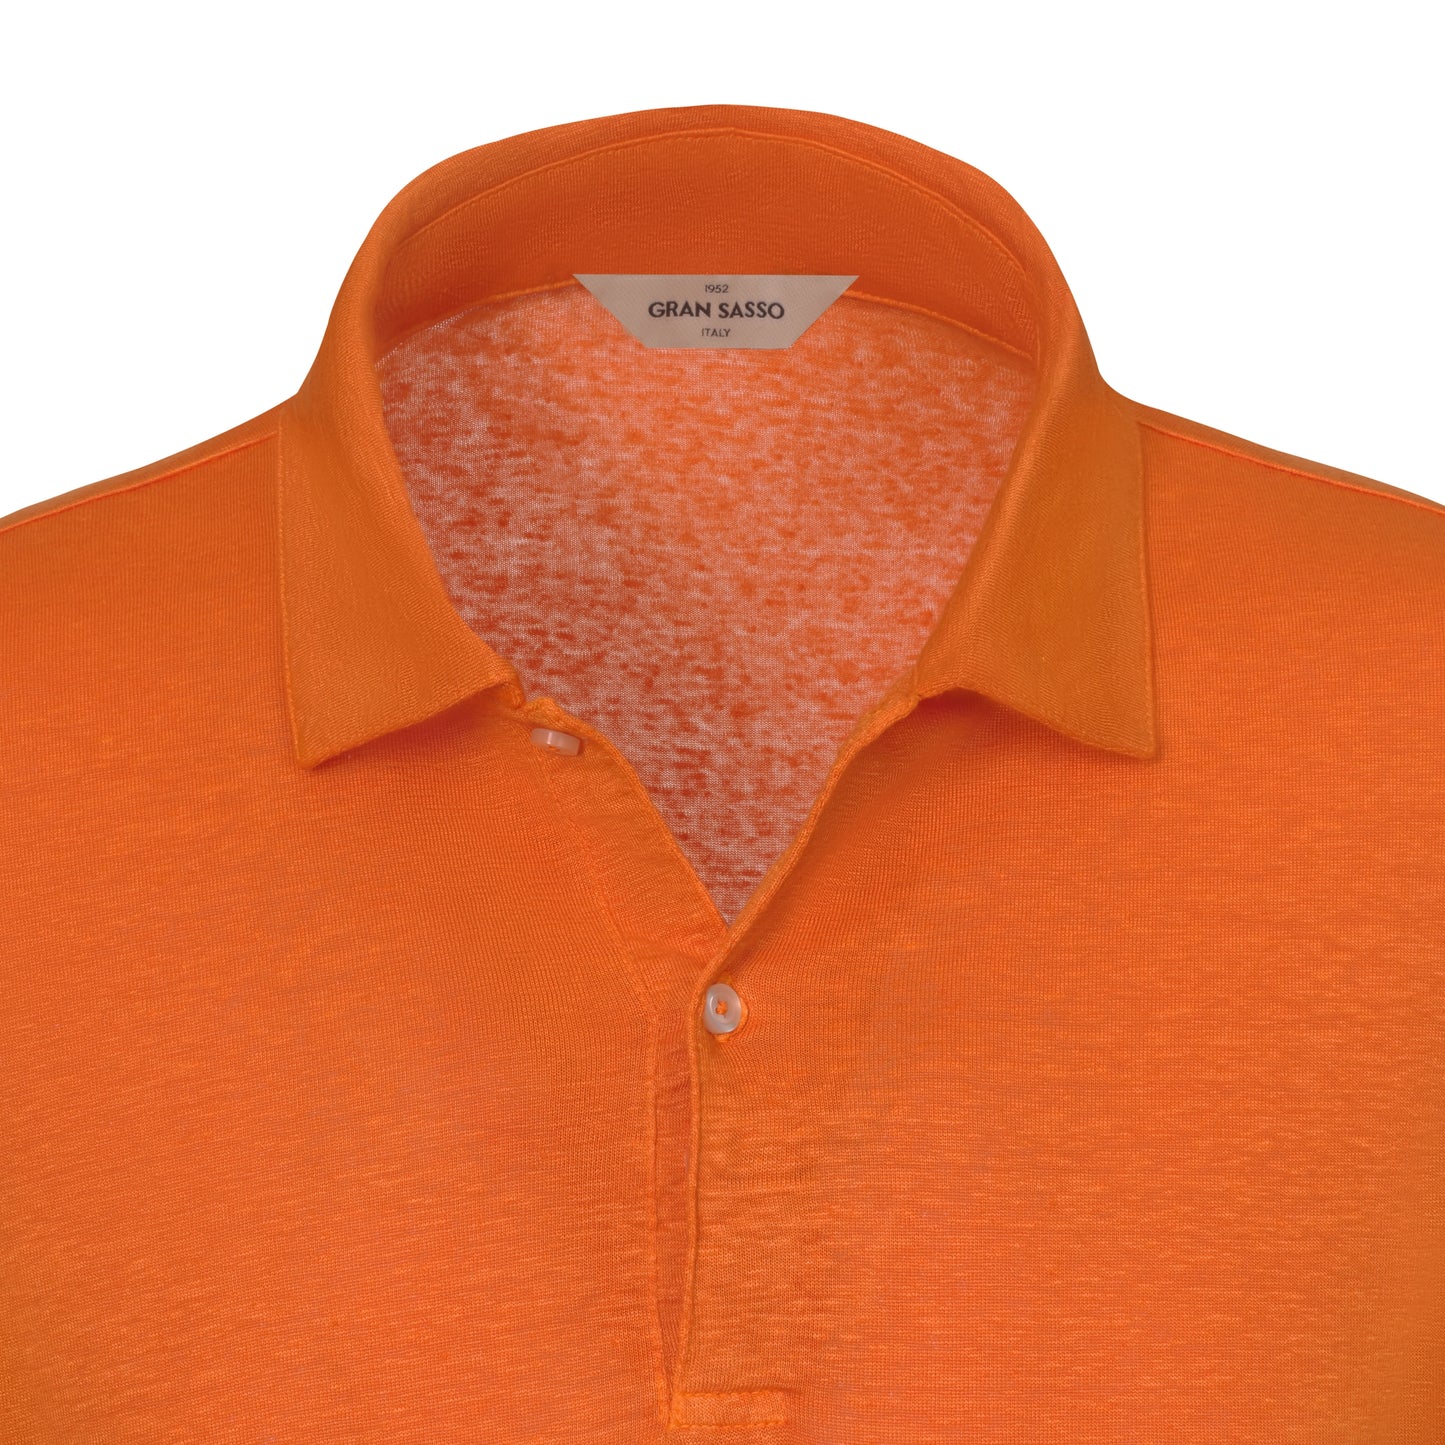 Zwei-Knopf-Poloshirt aus Leinenmischung in leuchtendem Orange